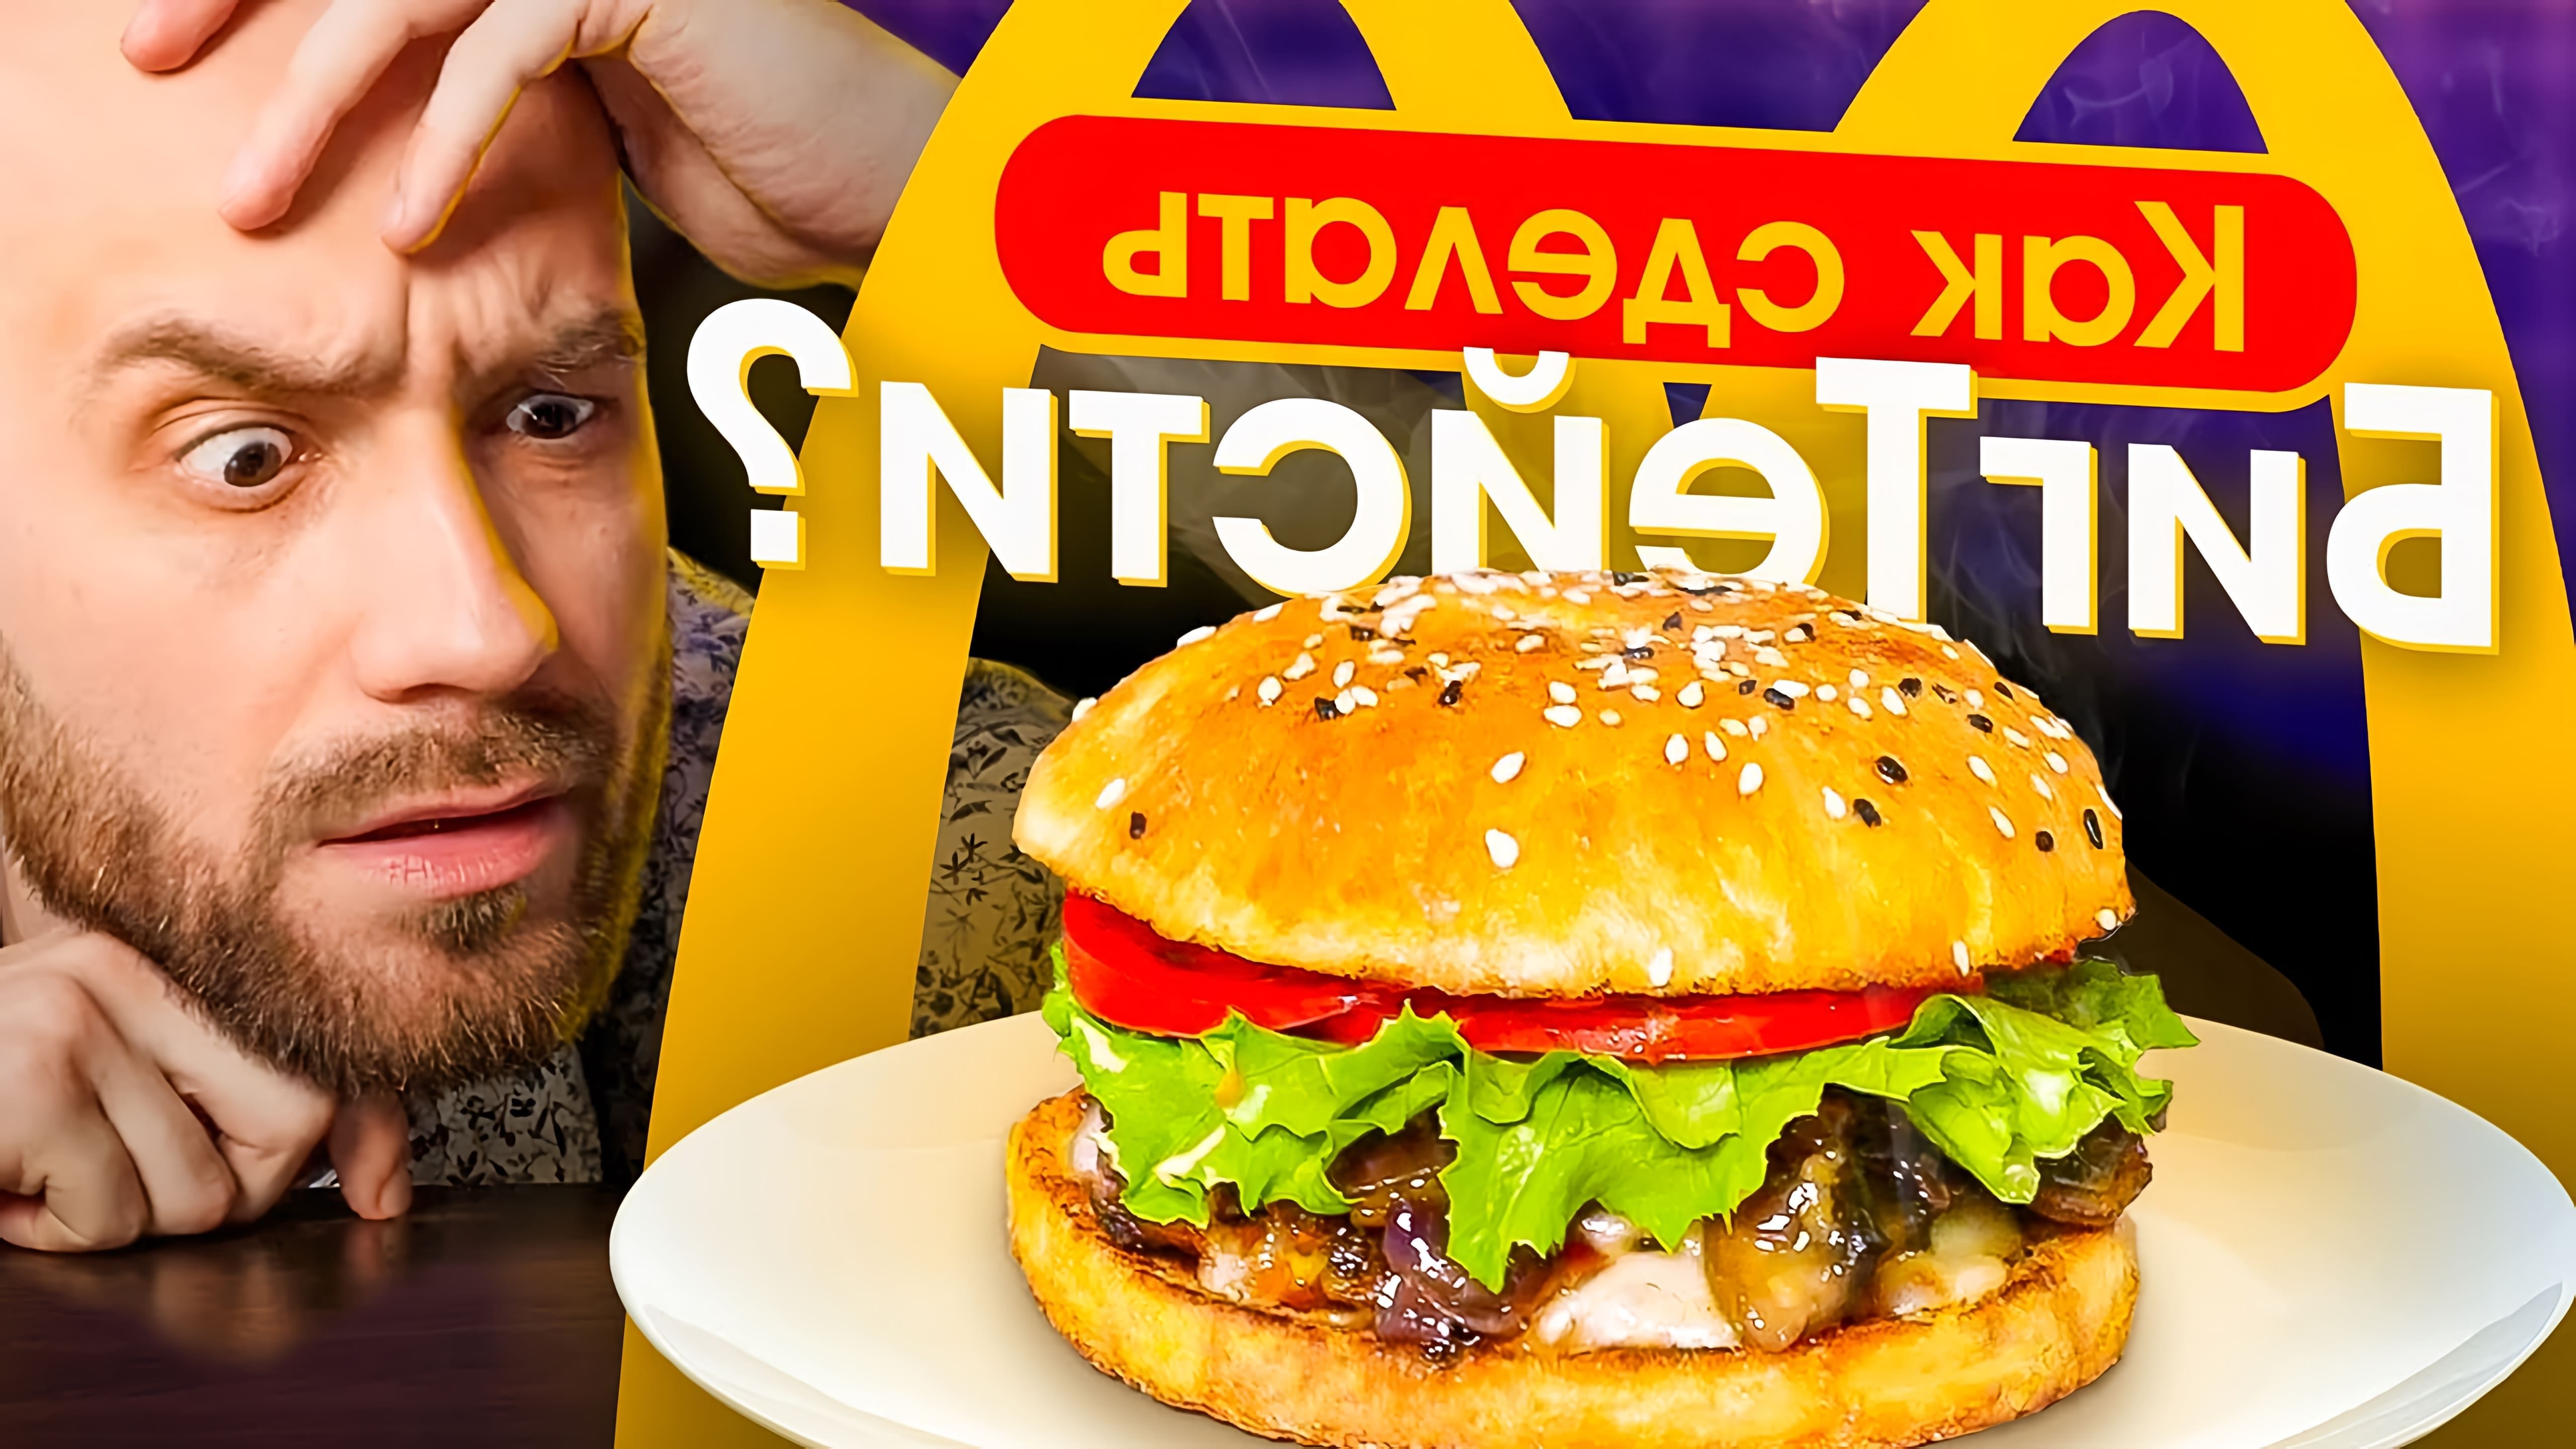 Видео - это рецепт приготовления бургера Big Tasty, воссоздающего версию от McDonald's дома с некоторыми модификациями